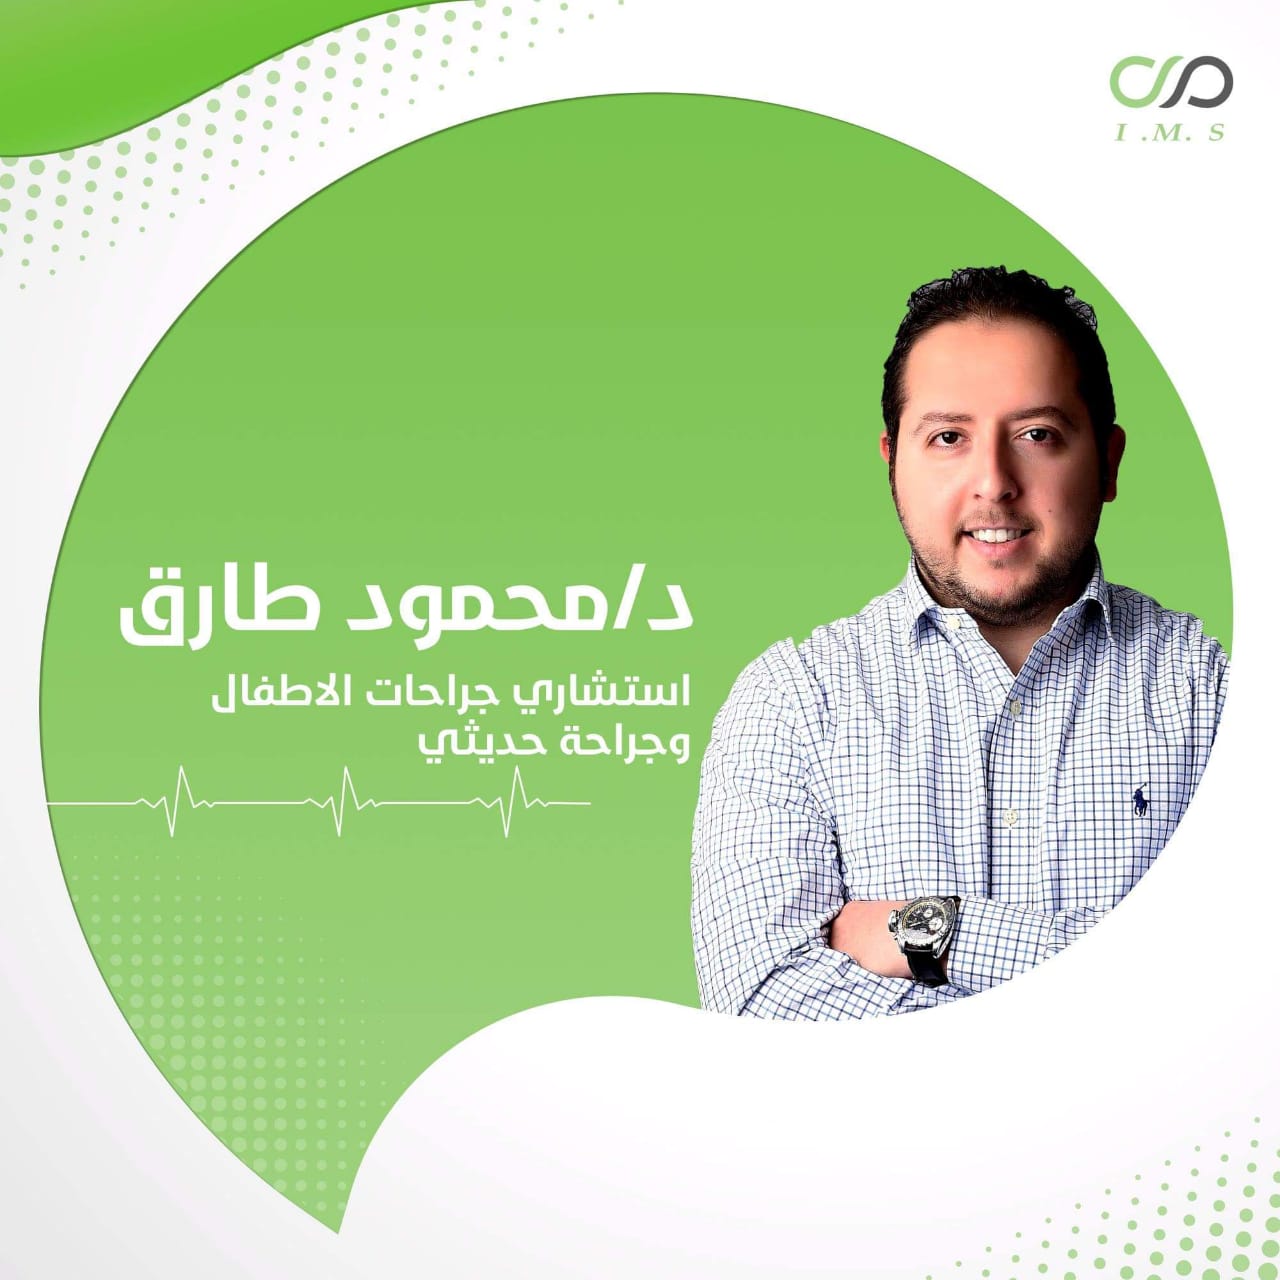 Dr. Mahmoud Tarek